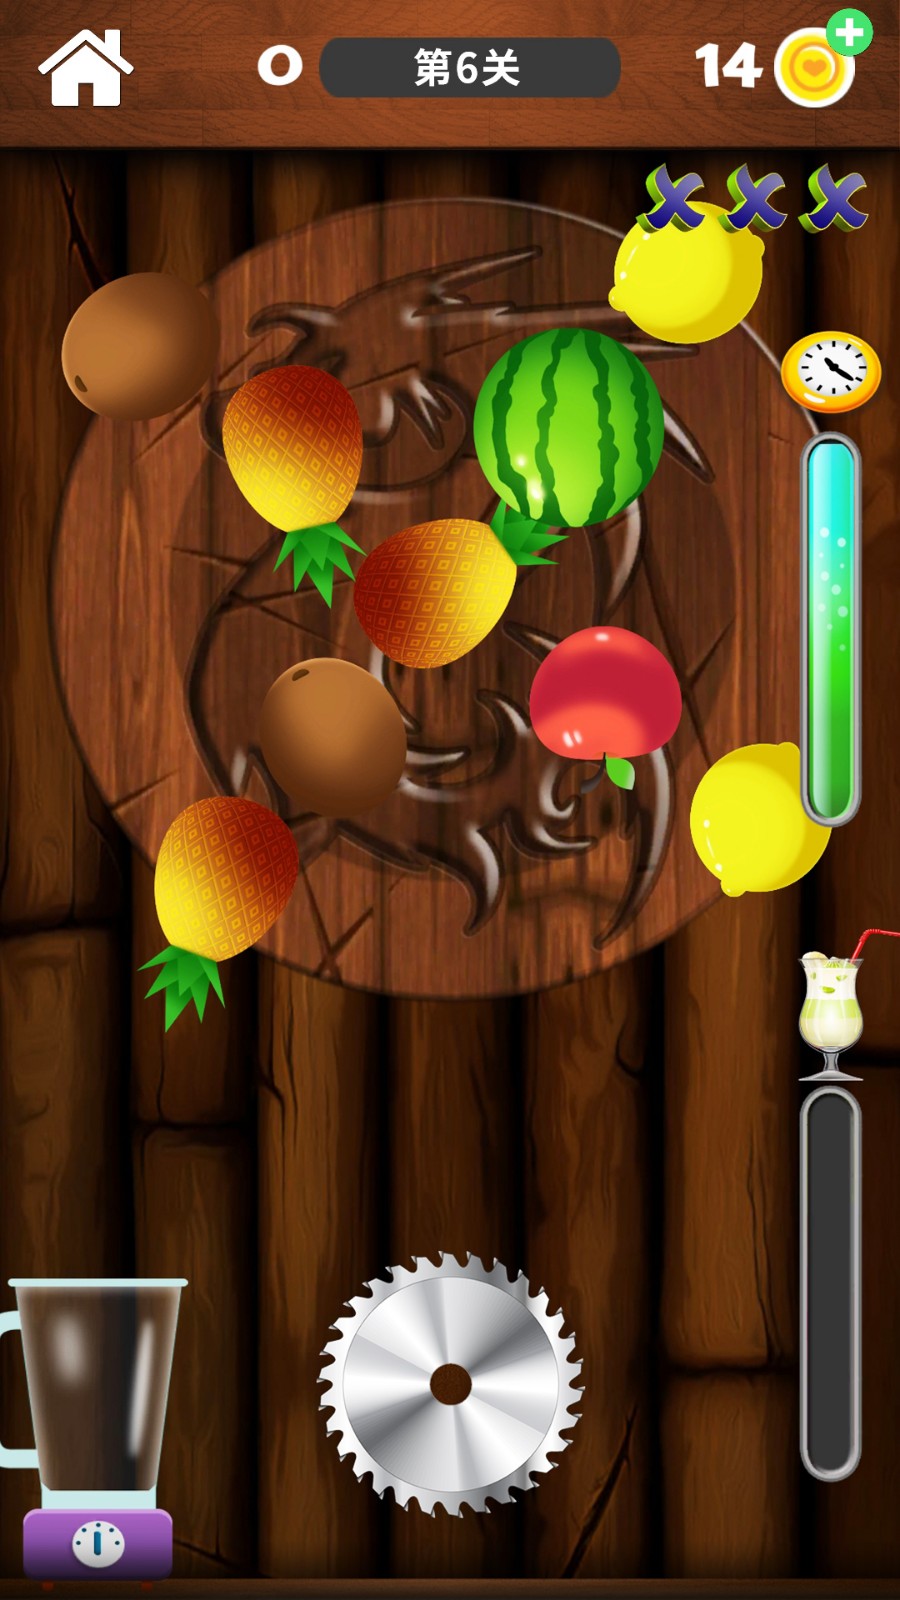 iphone切水果游戏叫什么_曾经风靡的切水果游戏_苹果手机经典切水果游戏